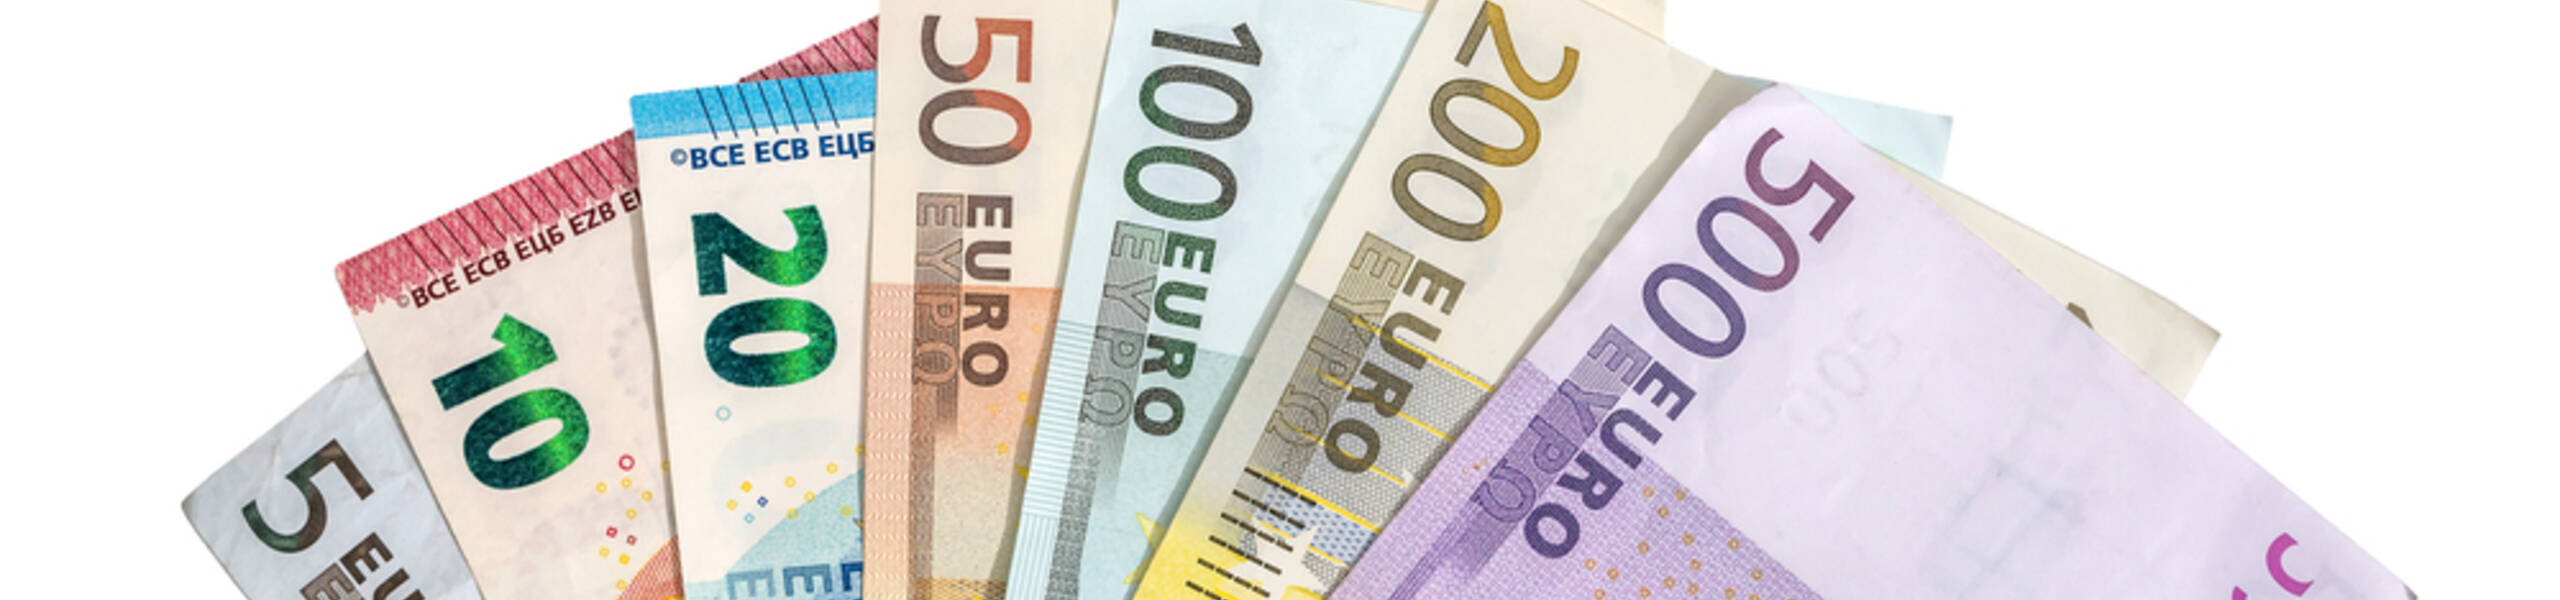 تحليل فني - اليورو فوق 1.18!!